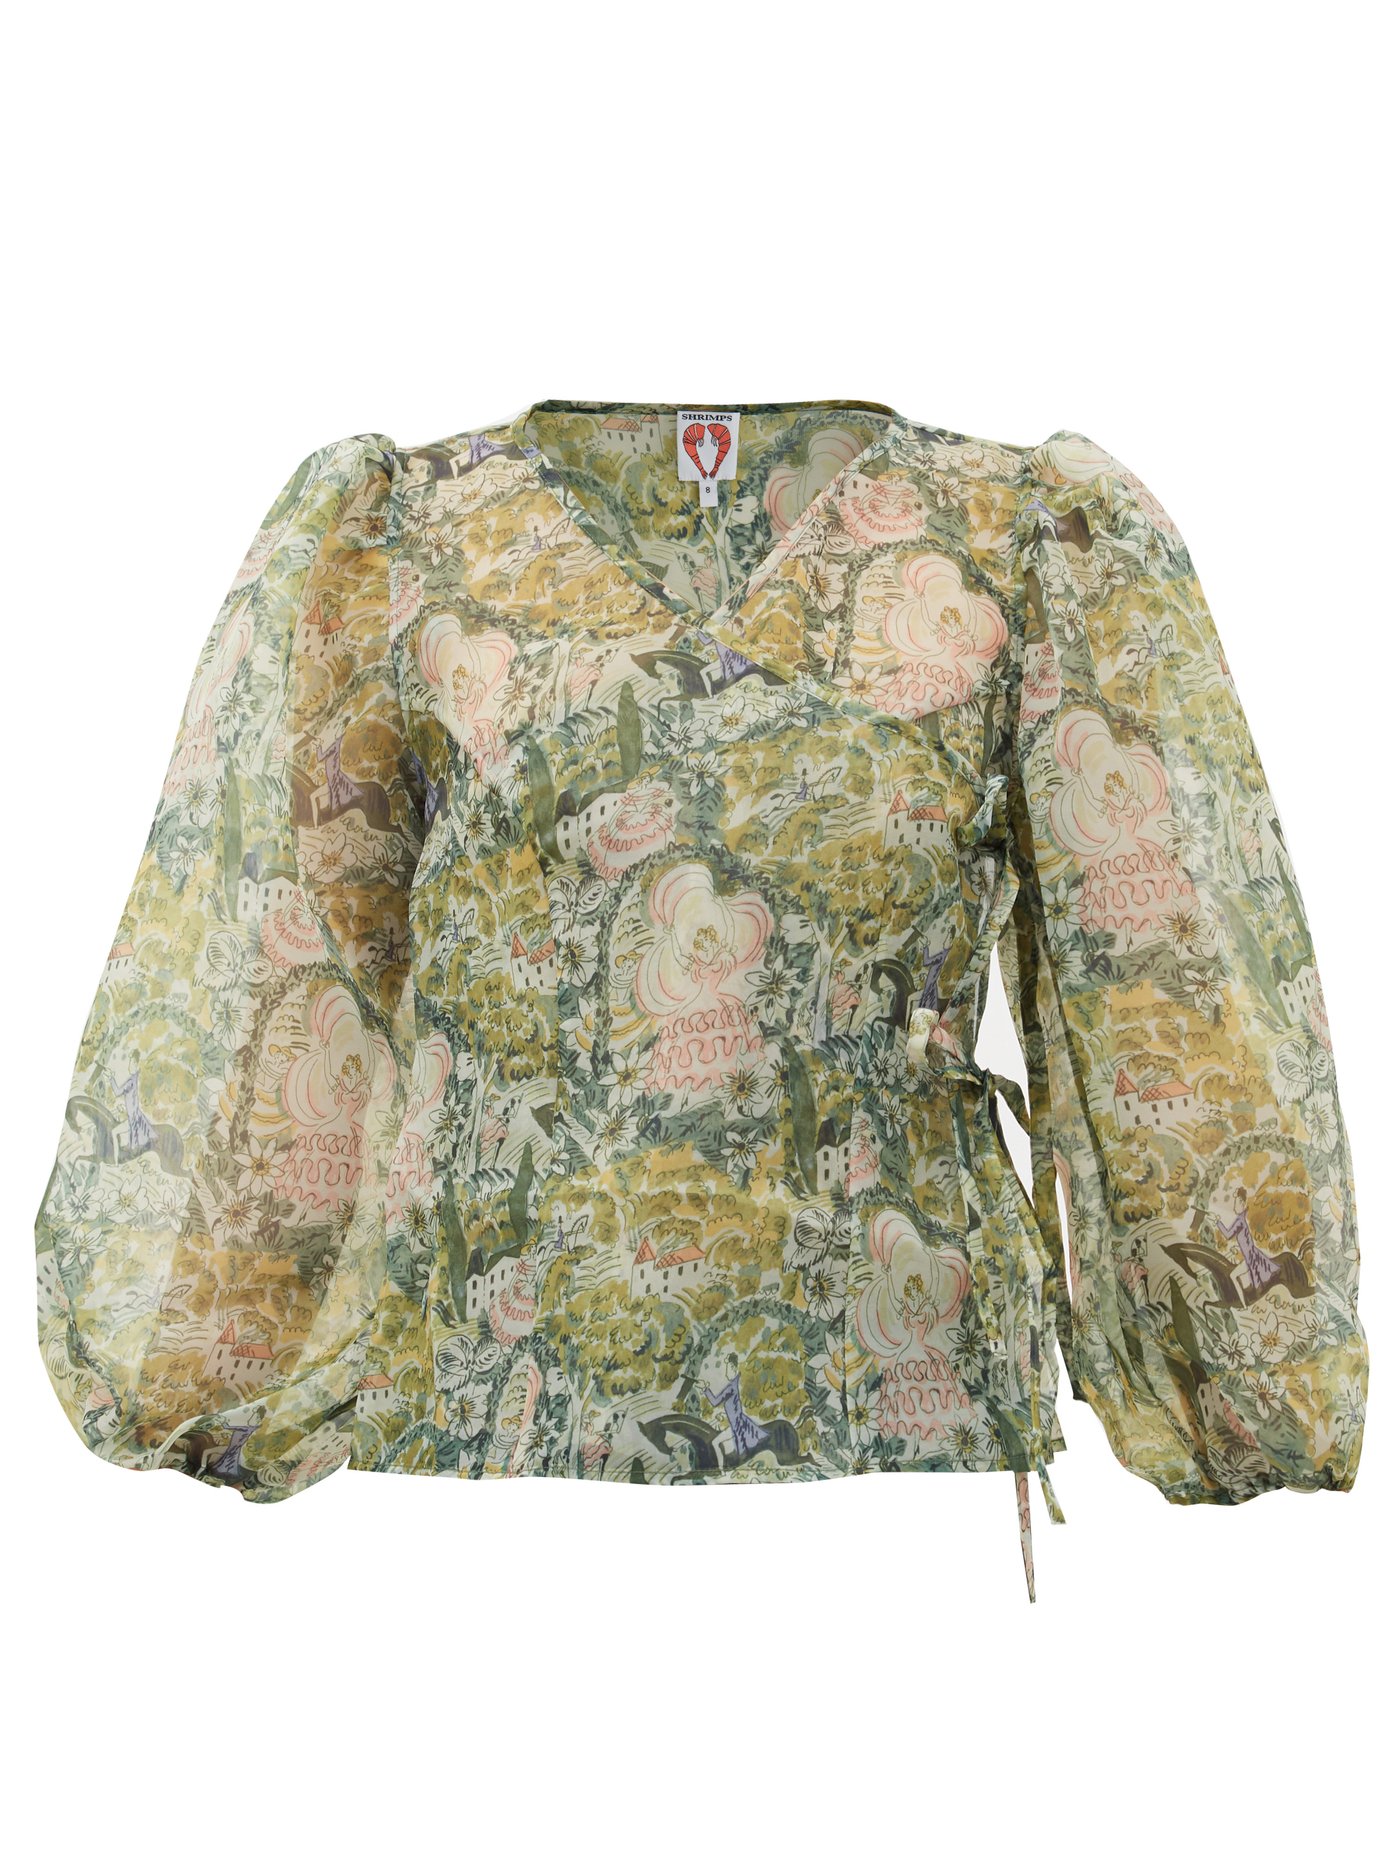 floral print organza blouse